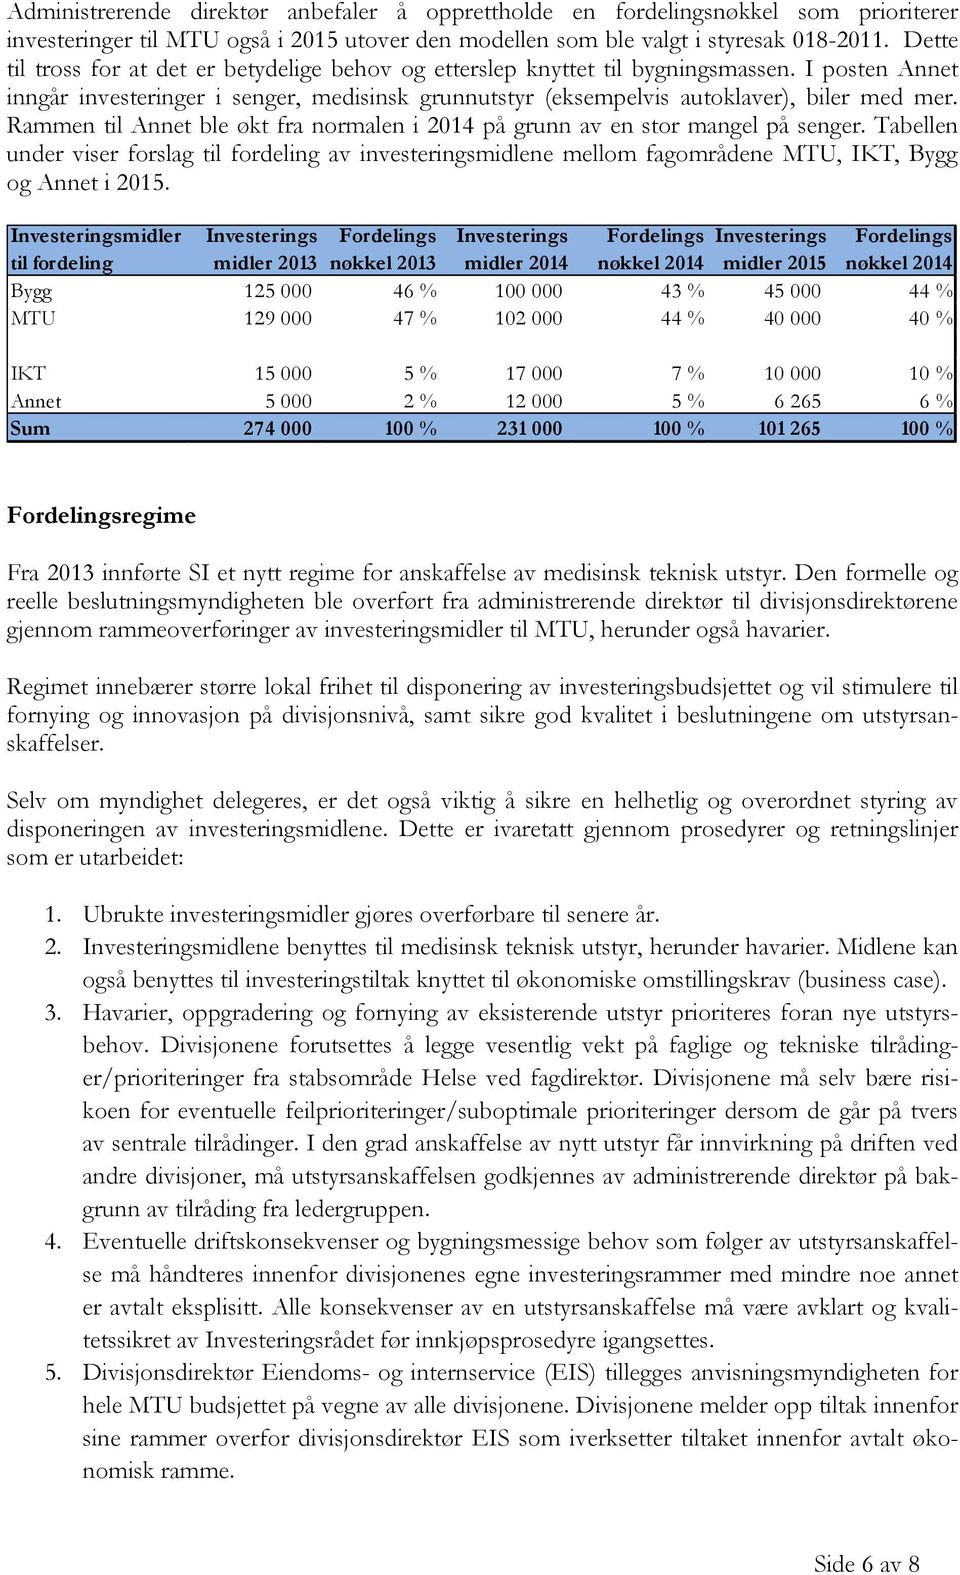 Rammen til Annet ble økt fra normalen i 2014 på grunn av en stor mangel på senger. Tabellen under viser forslag til fordeling av investeringsmidlene mellom fagområdene MTU, IKT, Bygg og Annet i 2015.